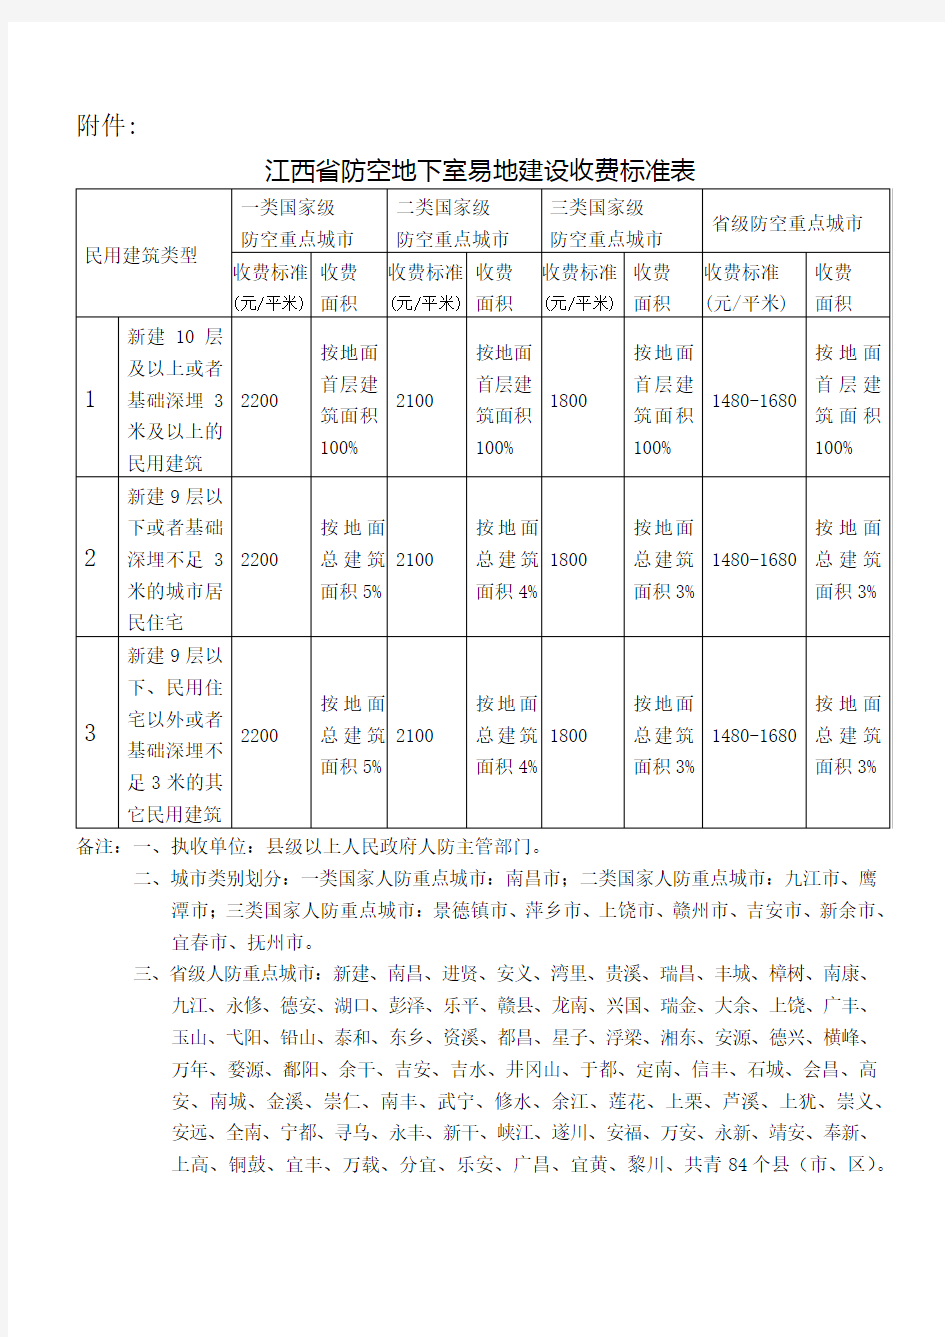 江西省防空地下室易地建设收费标准表